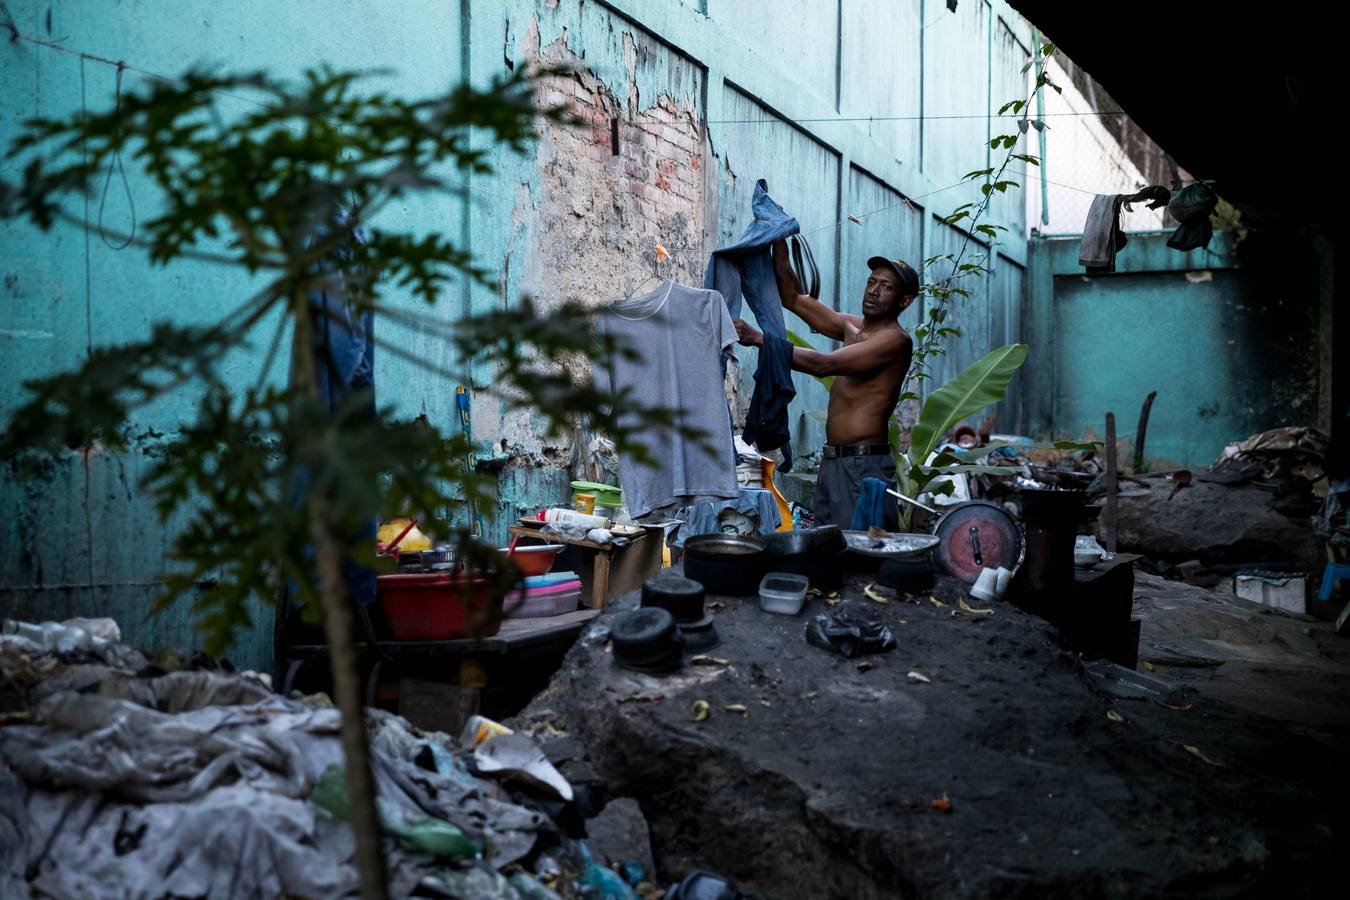 La severa crisis económica y social de Venezuela ha modificado los paisajes de la capital, no solo por la existencia de ciudadanos que buscan comida en la basura, sino también por la presencia de personas que han tomado los puentes como lugares de abrigo, algunos ya habitados por antiguos residentes